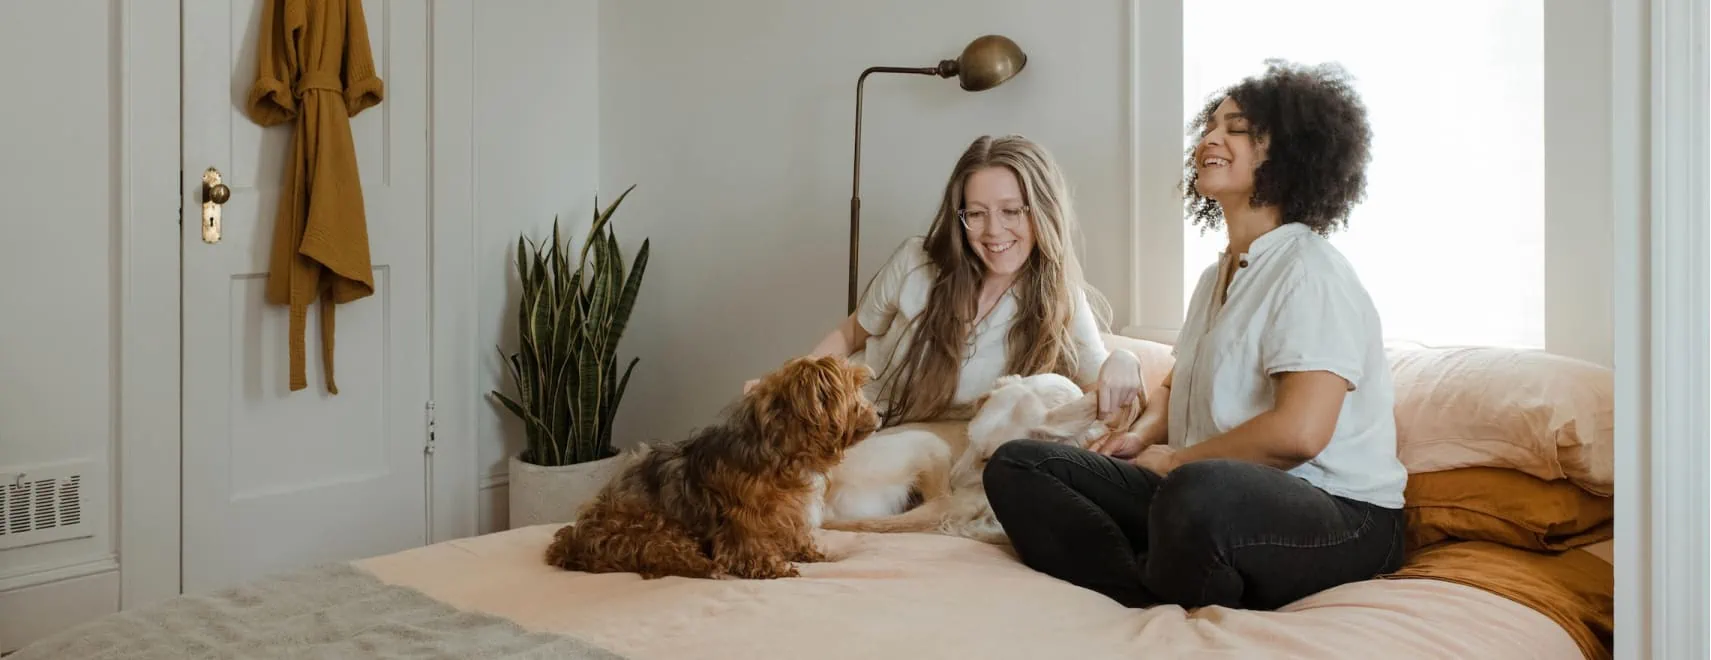 Lachende Frauen mit einem Hund